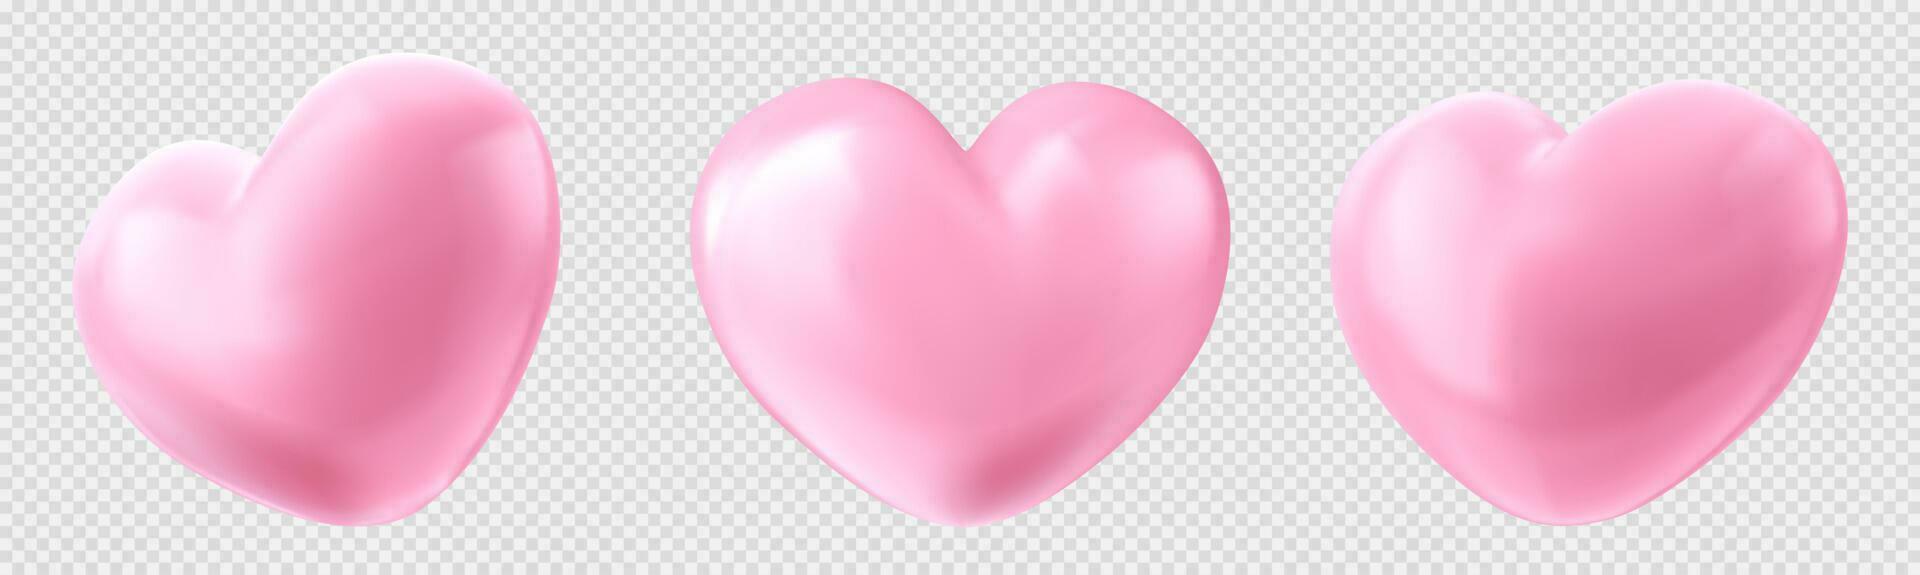 realistisk uppsättning av hjärta form ballonger uppsättning vektor